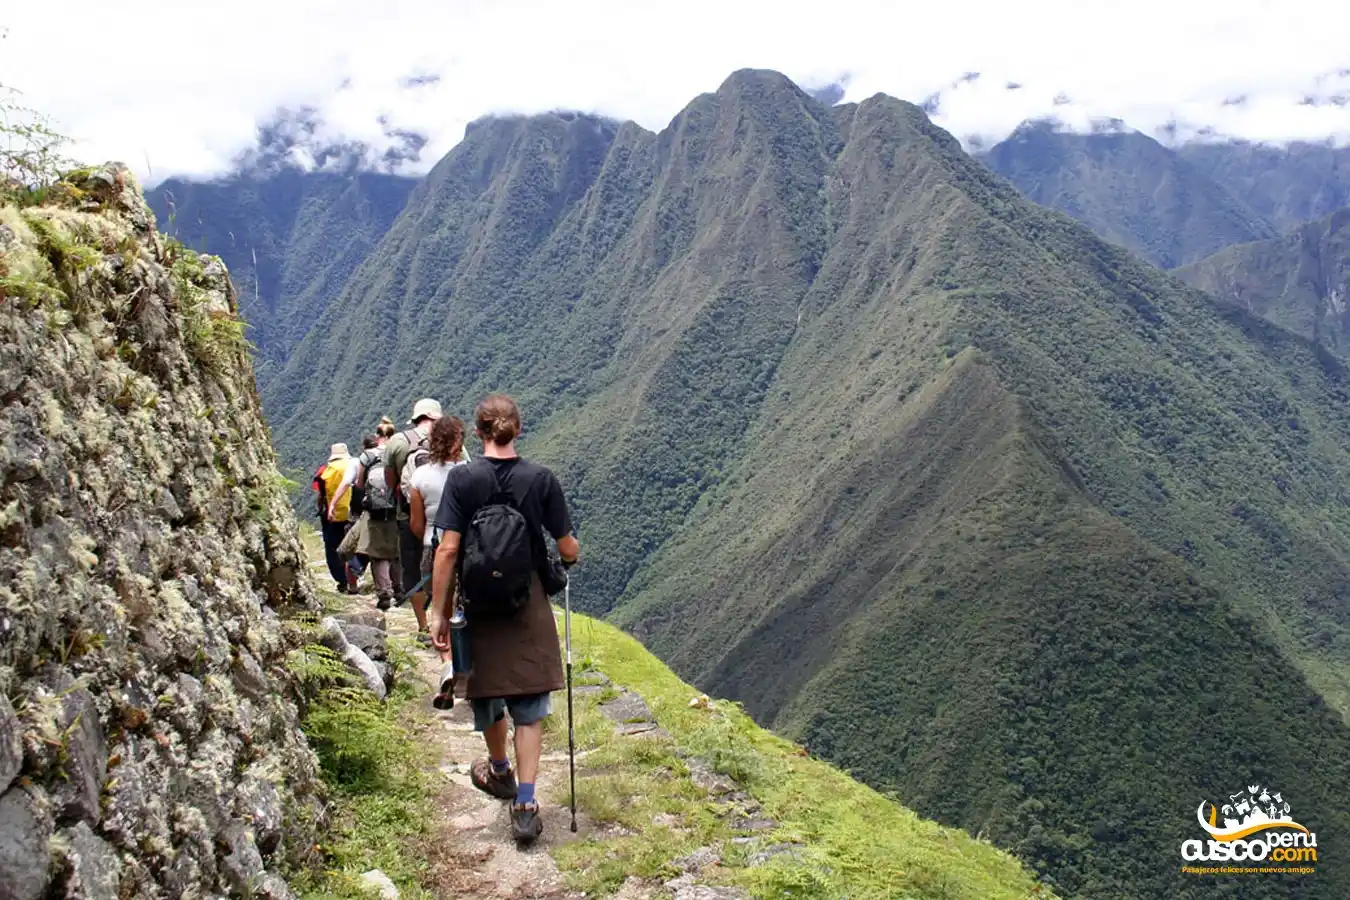 Camino Inca llegando a Wiñayhuayna
Fuente: CuscoPeru.com